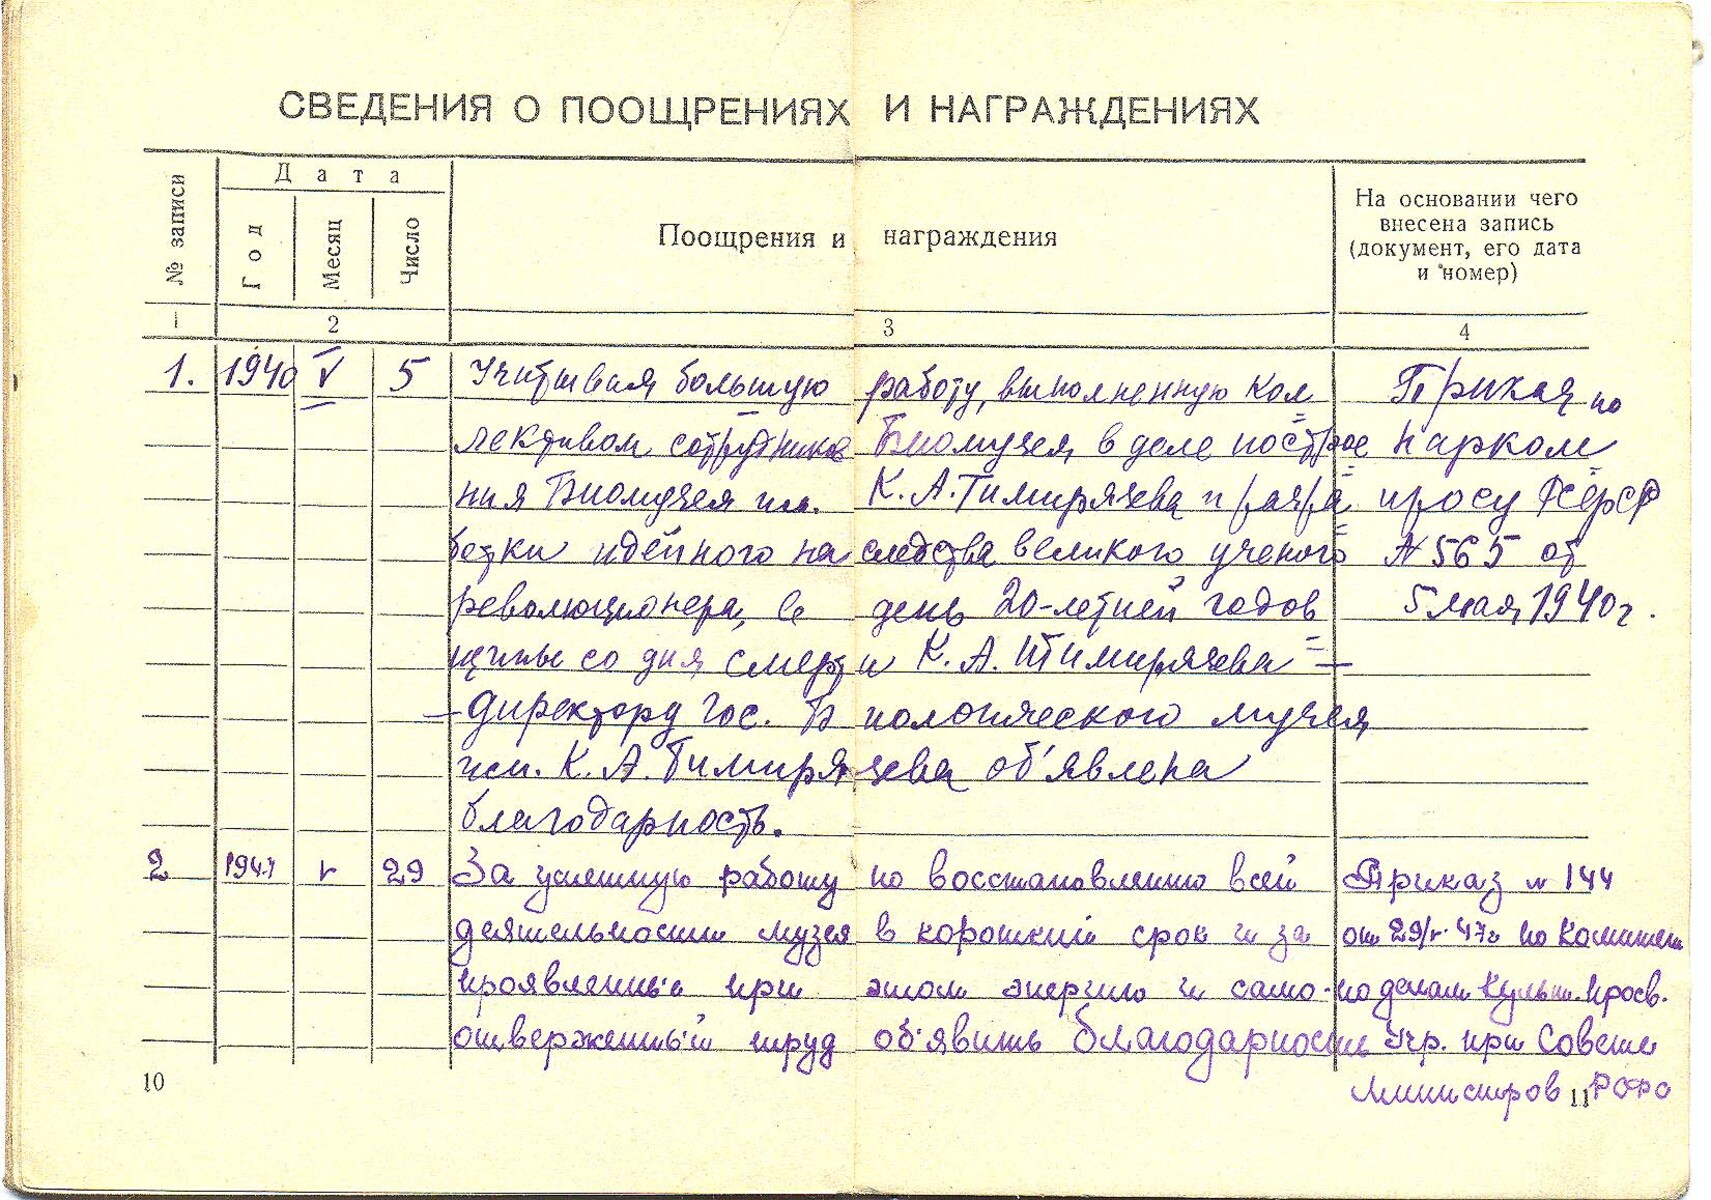 Трудовая книжка Б. М. Завадовского. Дата заполнения 21 января 1939 г. (ГБМТ ОФ-10282/3)